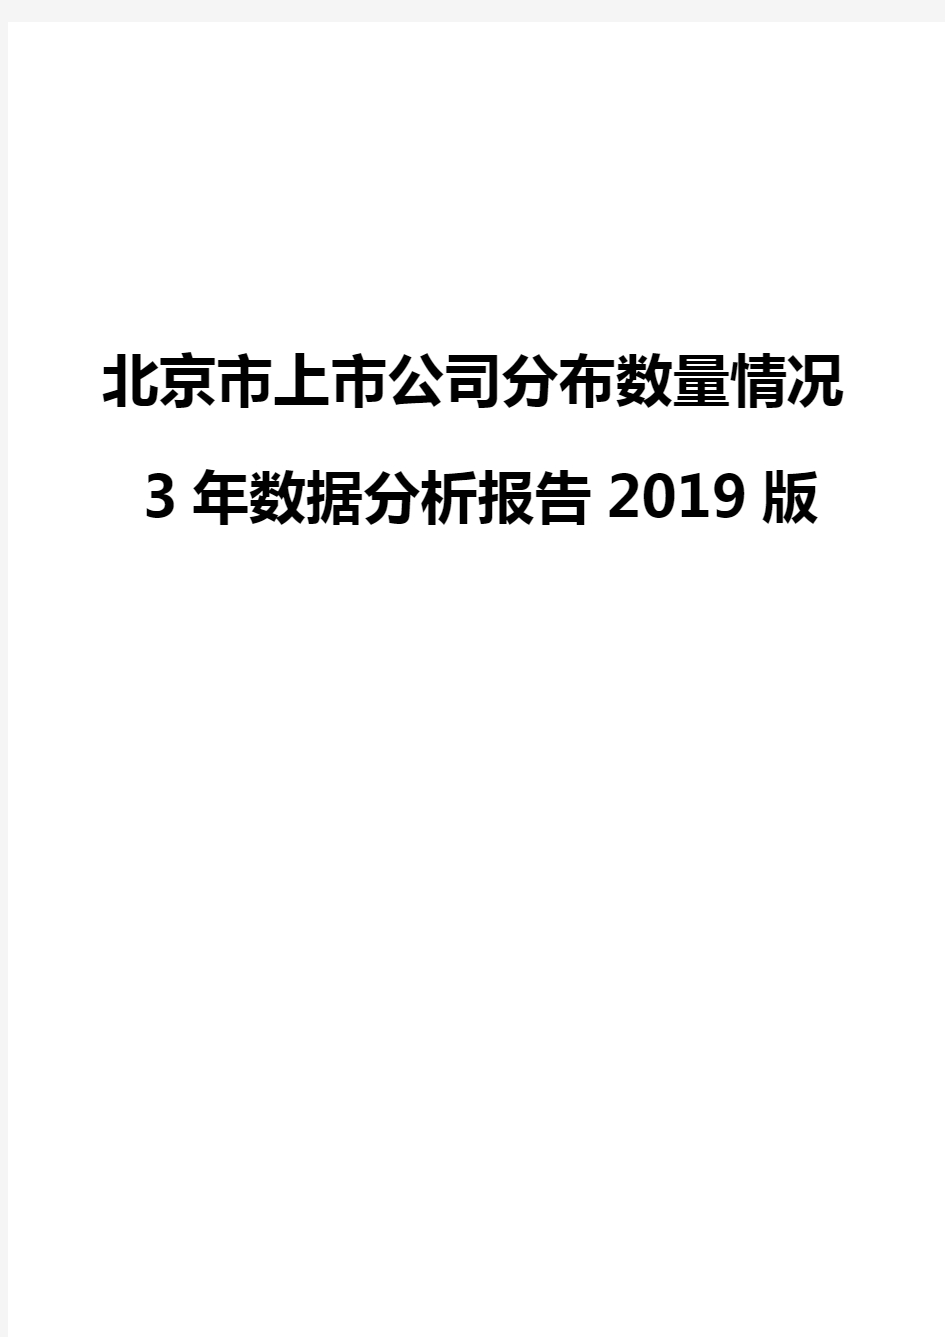 北京市上市公司分布数量情况3年数据分析报告2019版